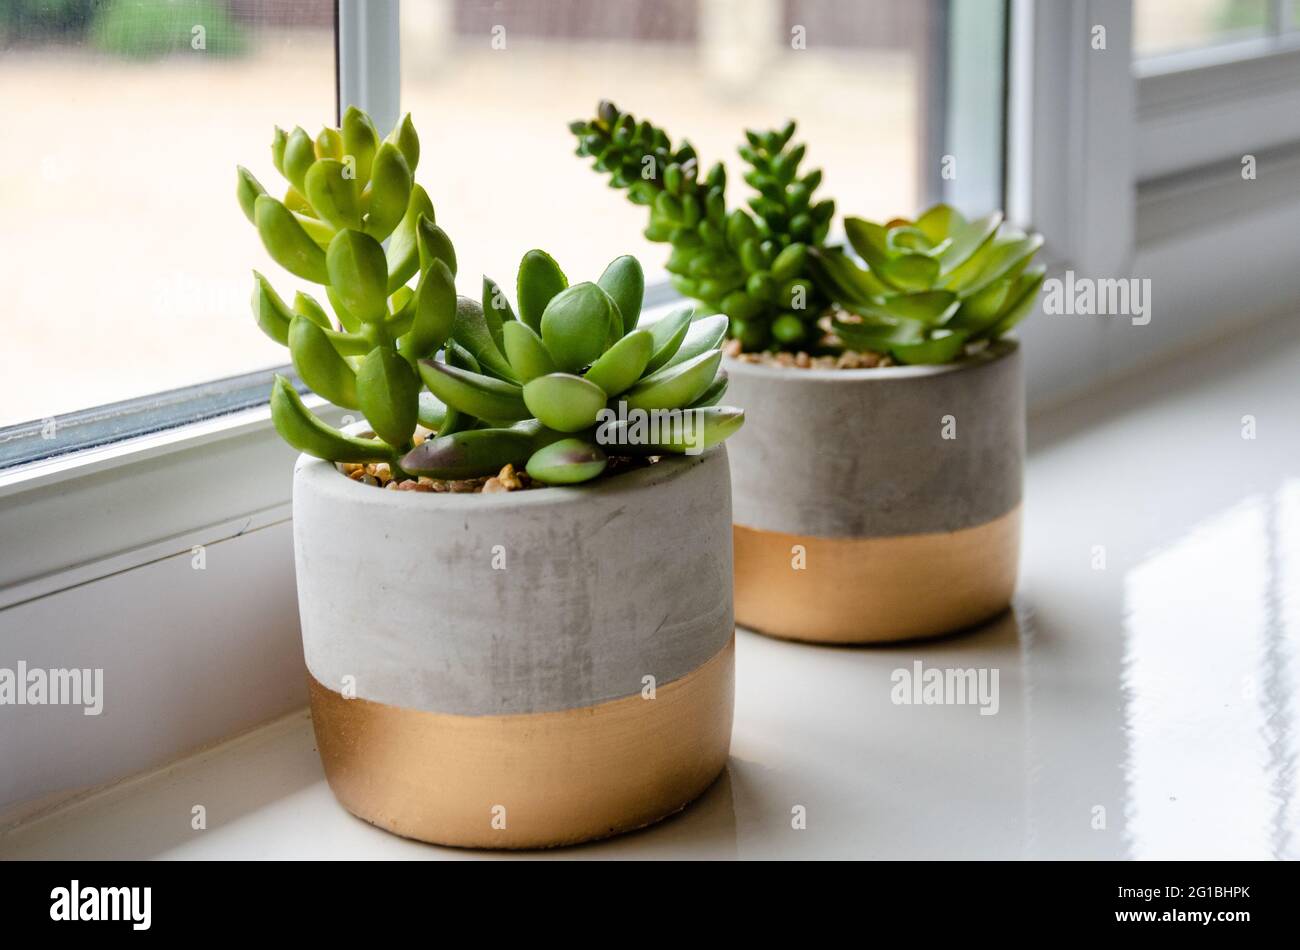 Dos macetas de plantas suculentas se sientan juntas en un alféizar luminoso y aireado como punto de interés en la decoración de una habitación. Foto de stock